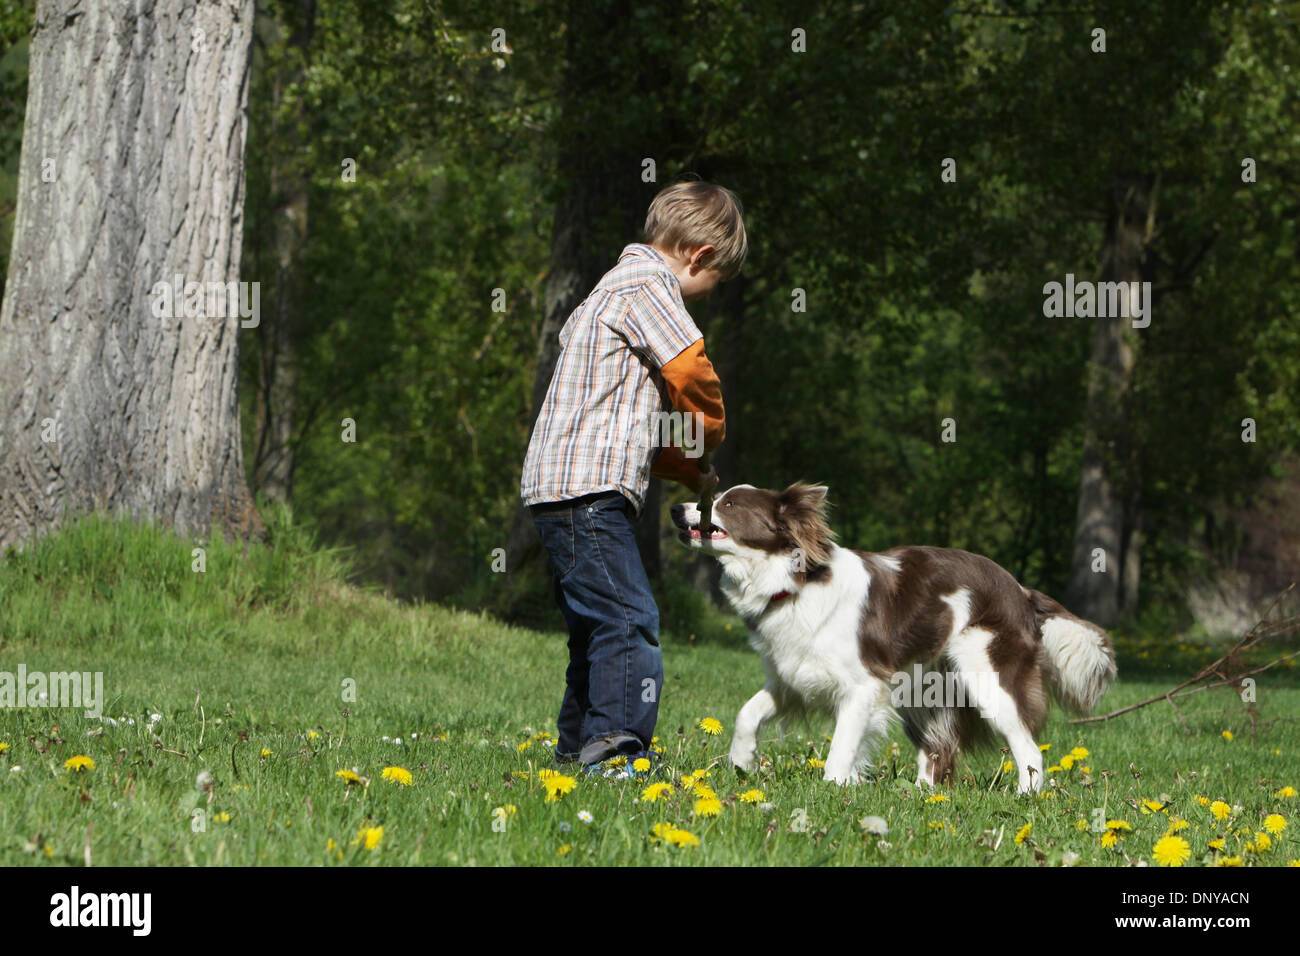 Chien Border Collie adulte et un garçon jouant avec un stick Banque D'Images